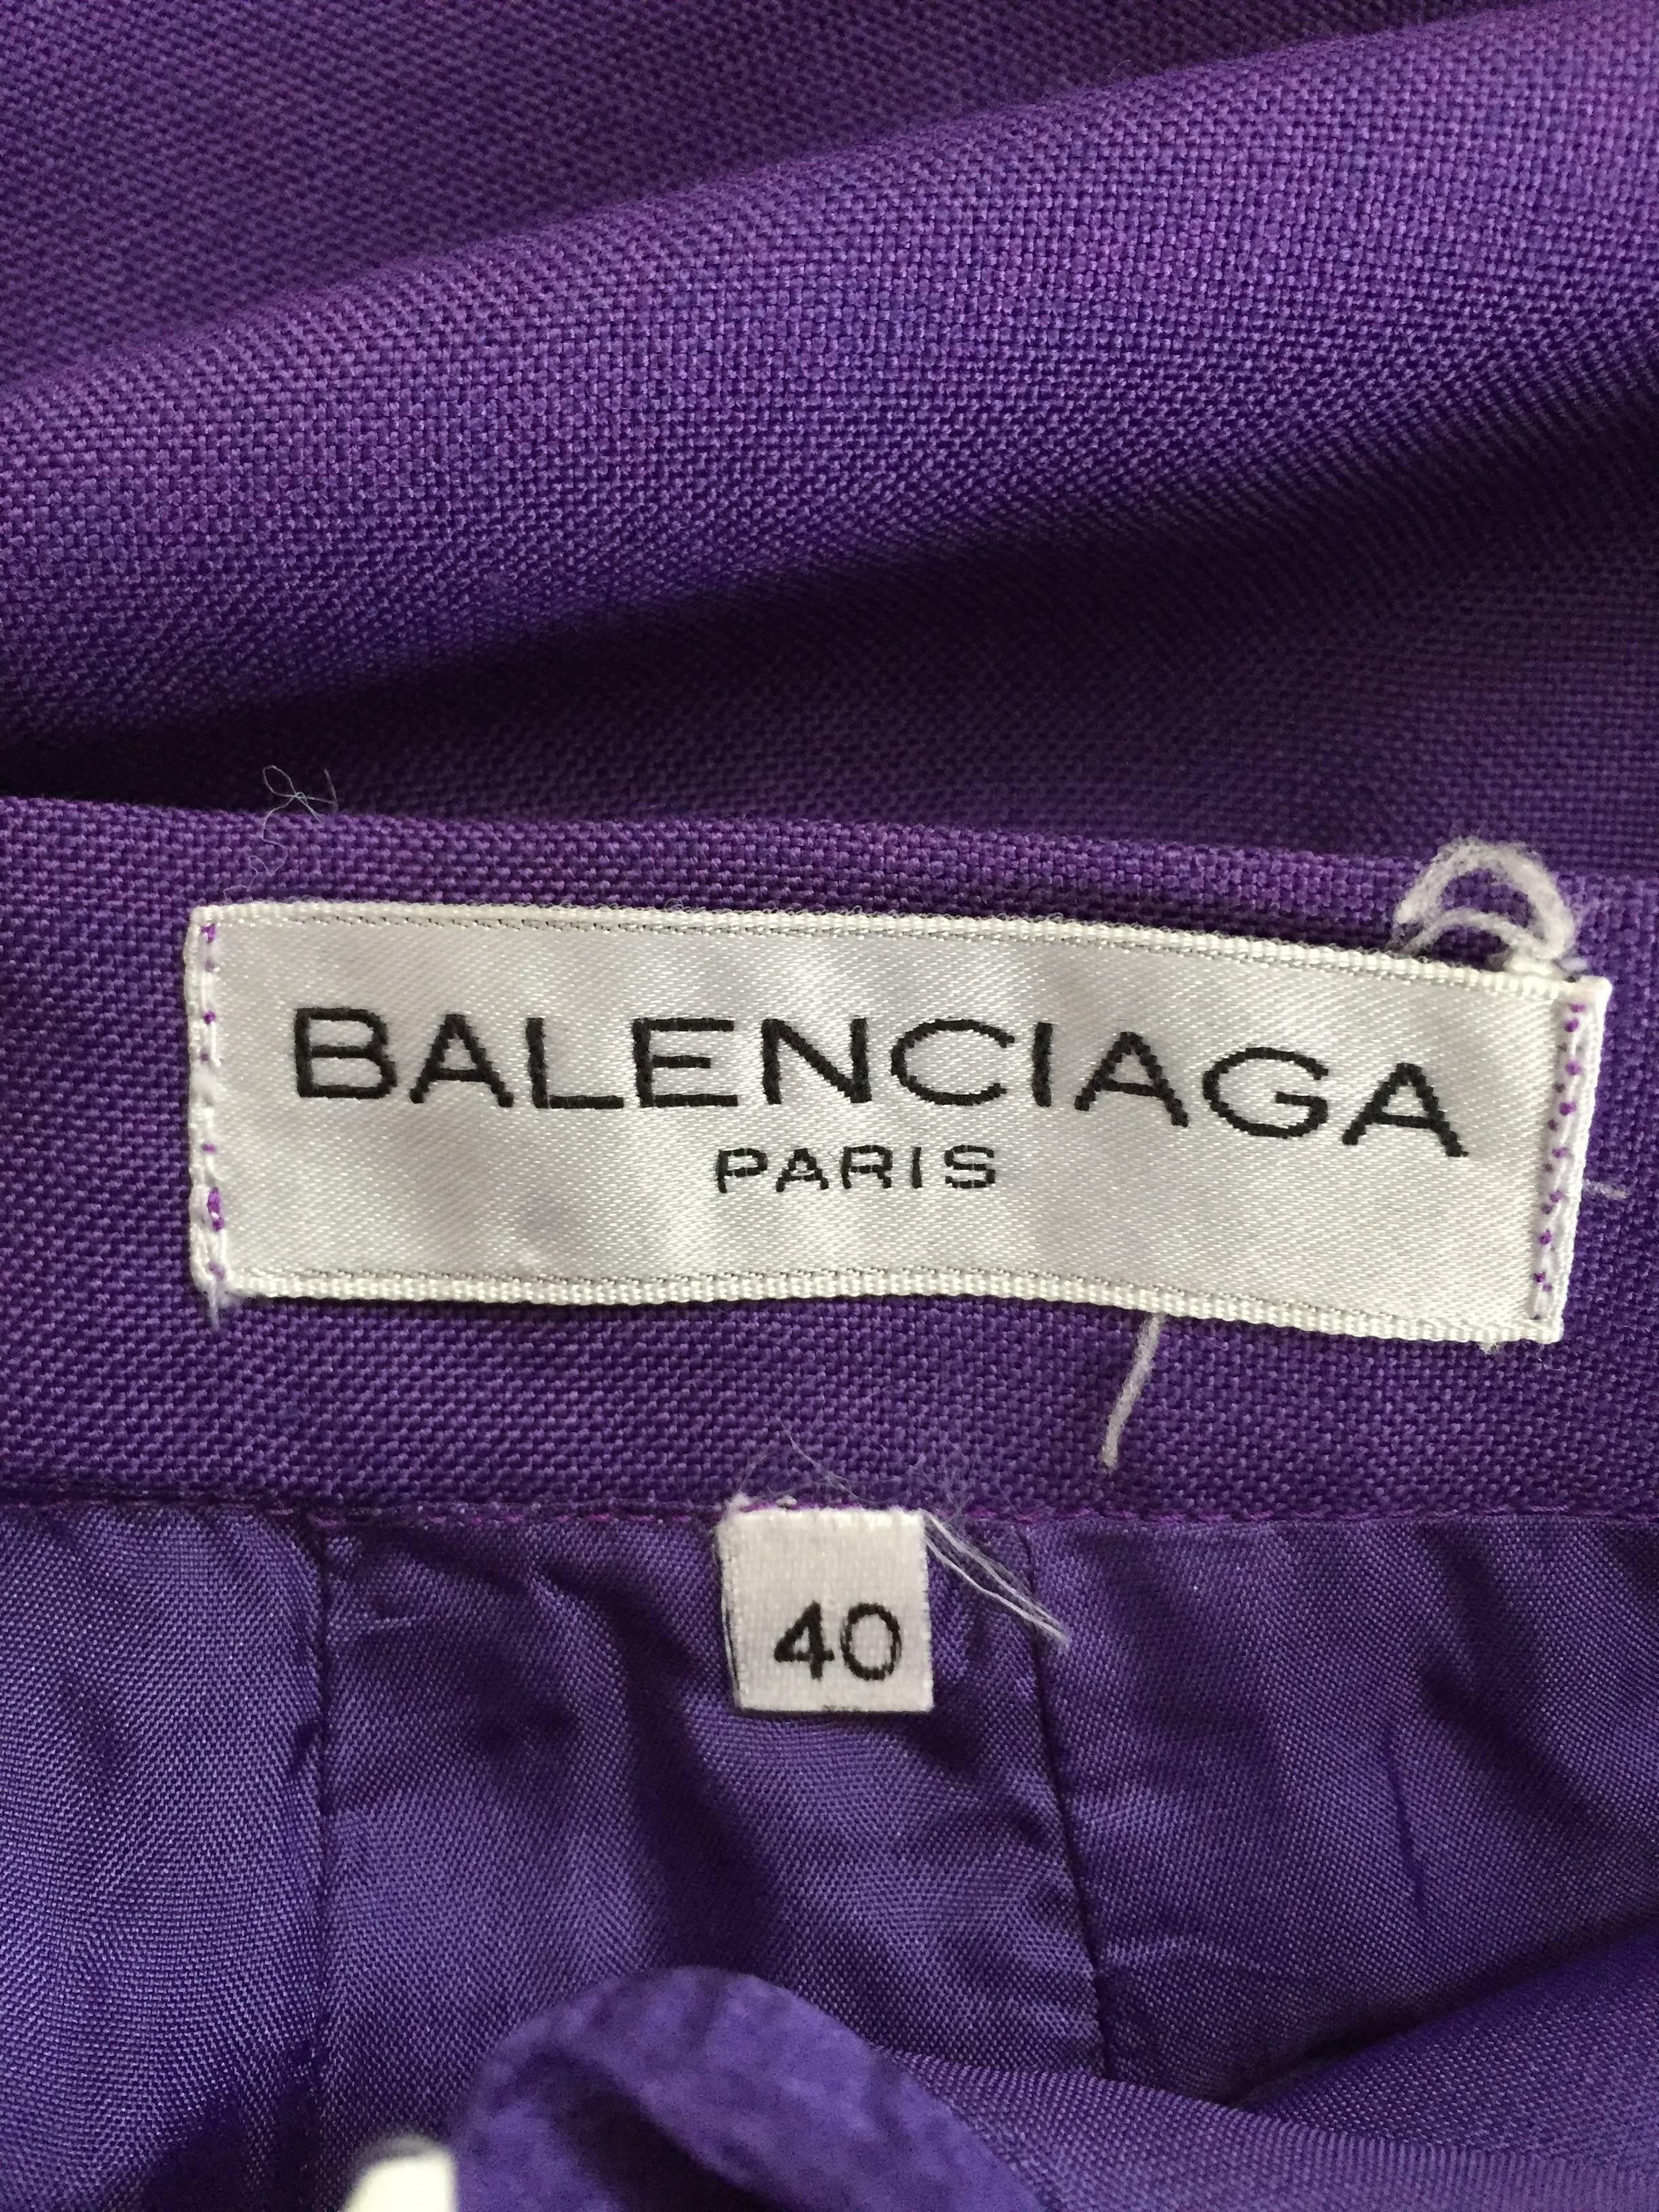 Balenciaga Paris 1980s Violet Skirt Size 4/6. For Sale 1